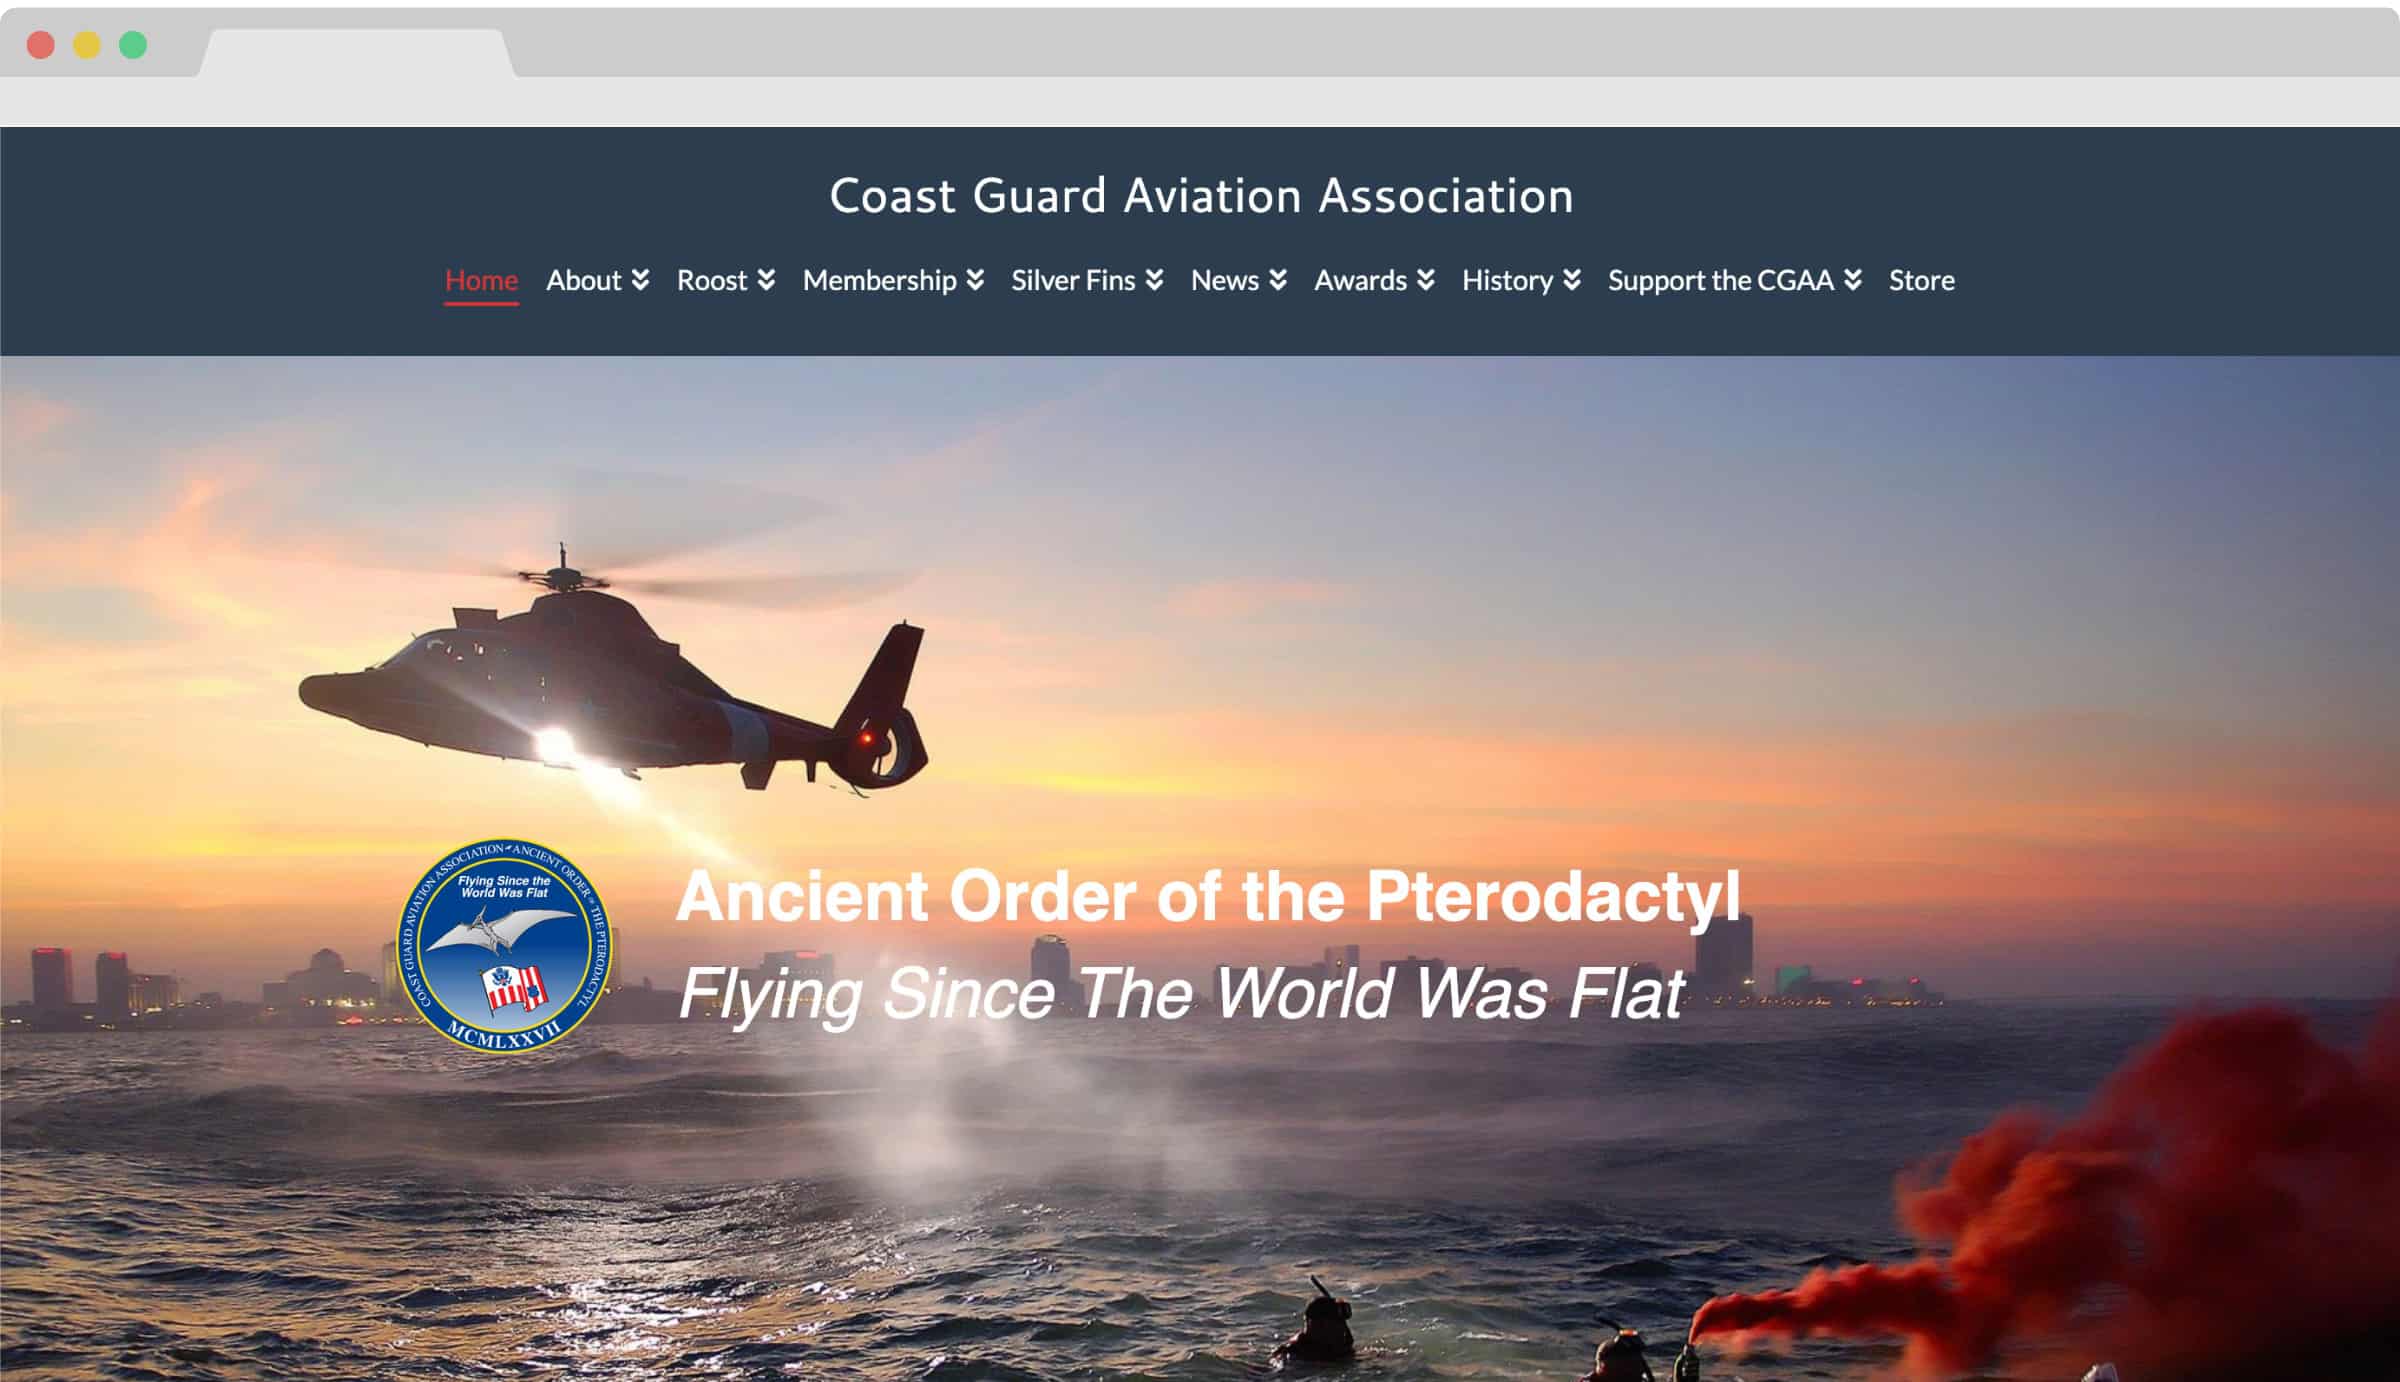 Coast Guard Aviation Association Portfolio Cover